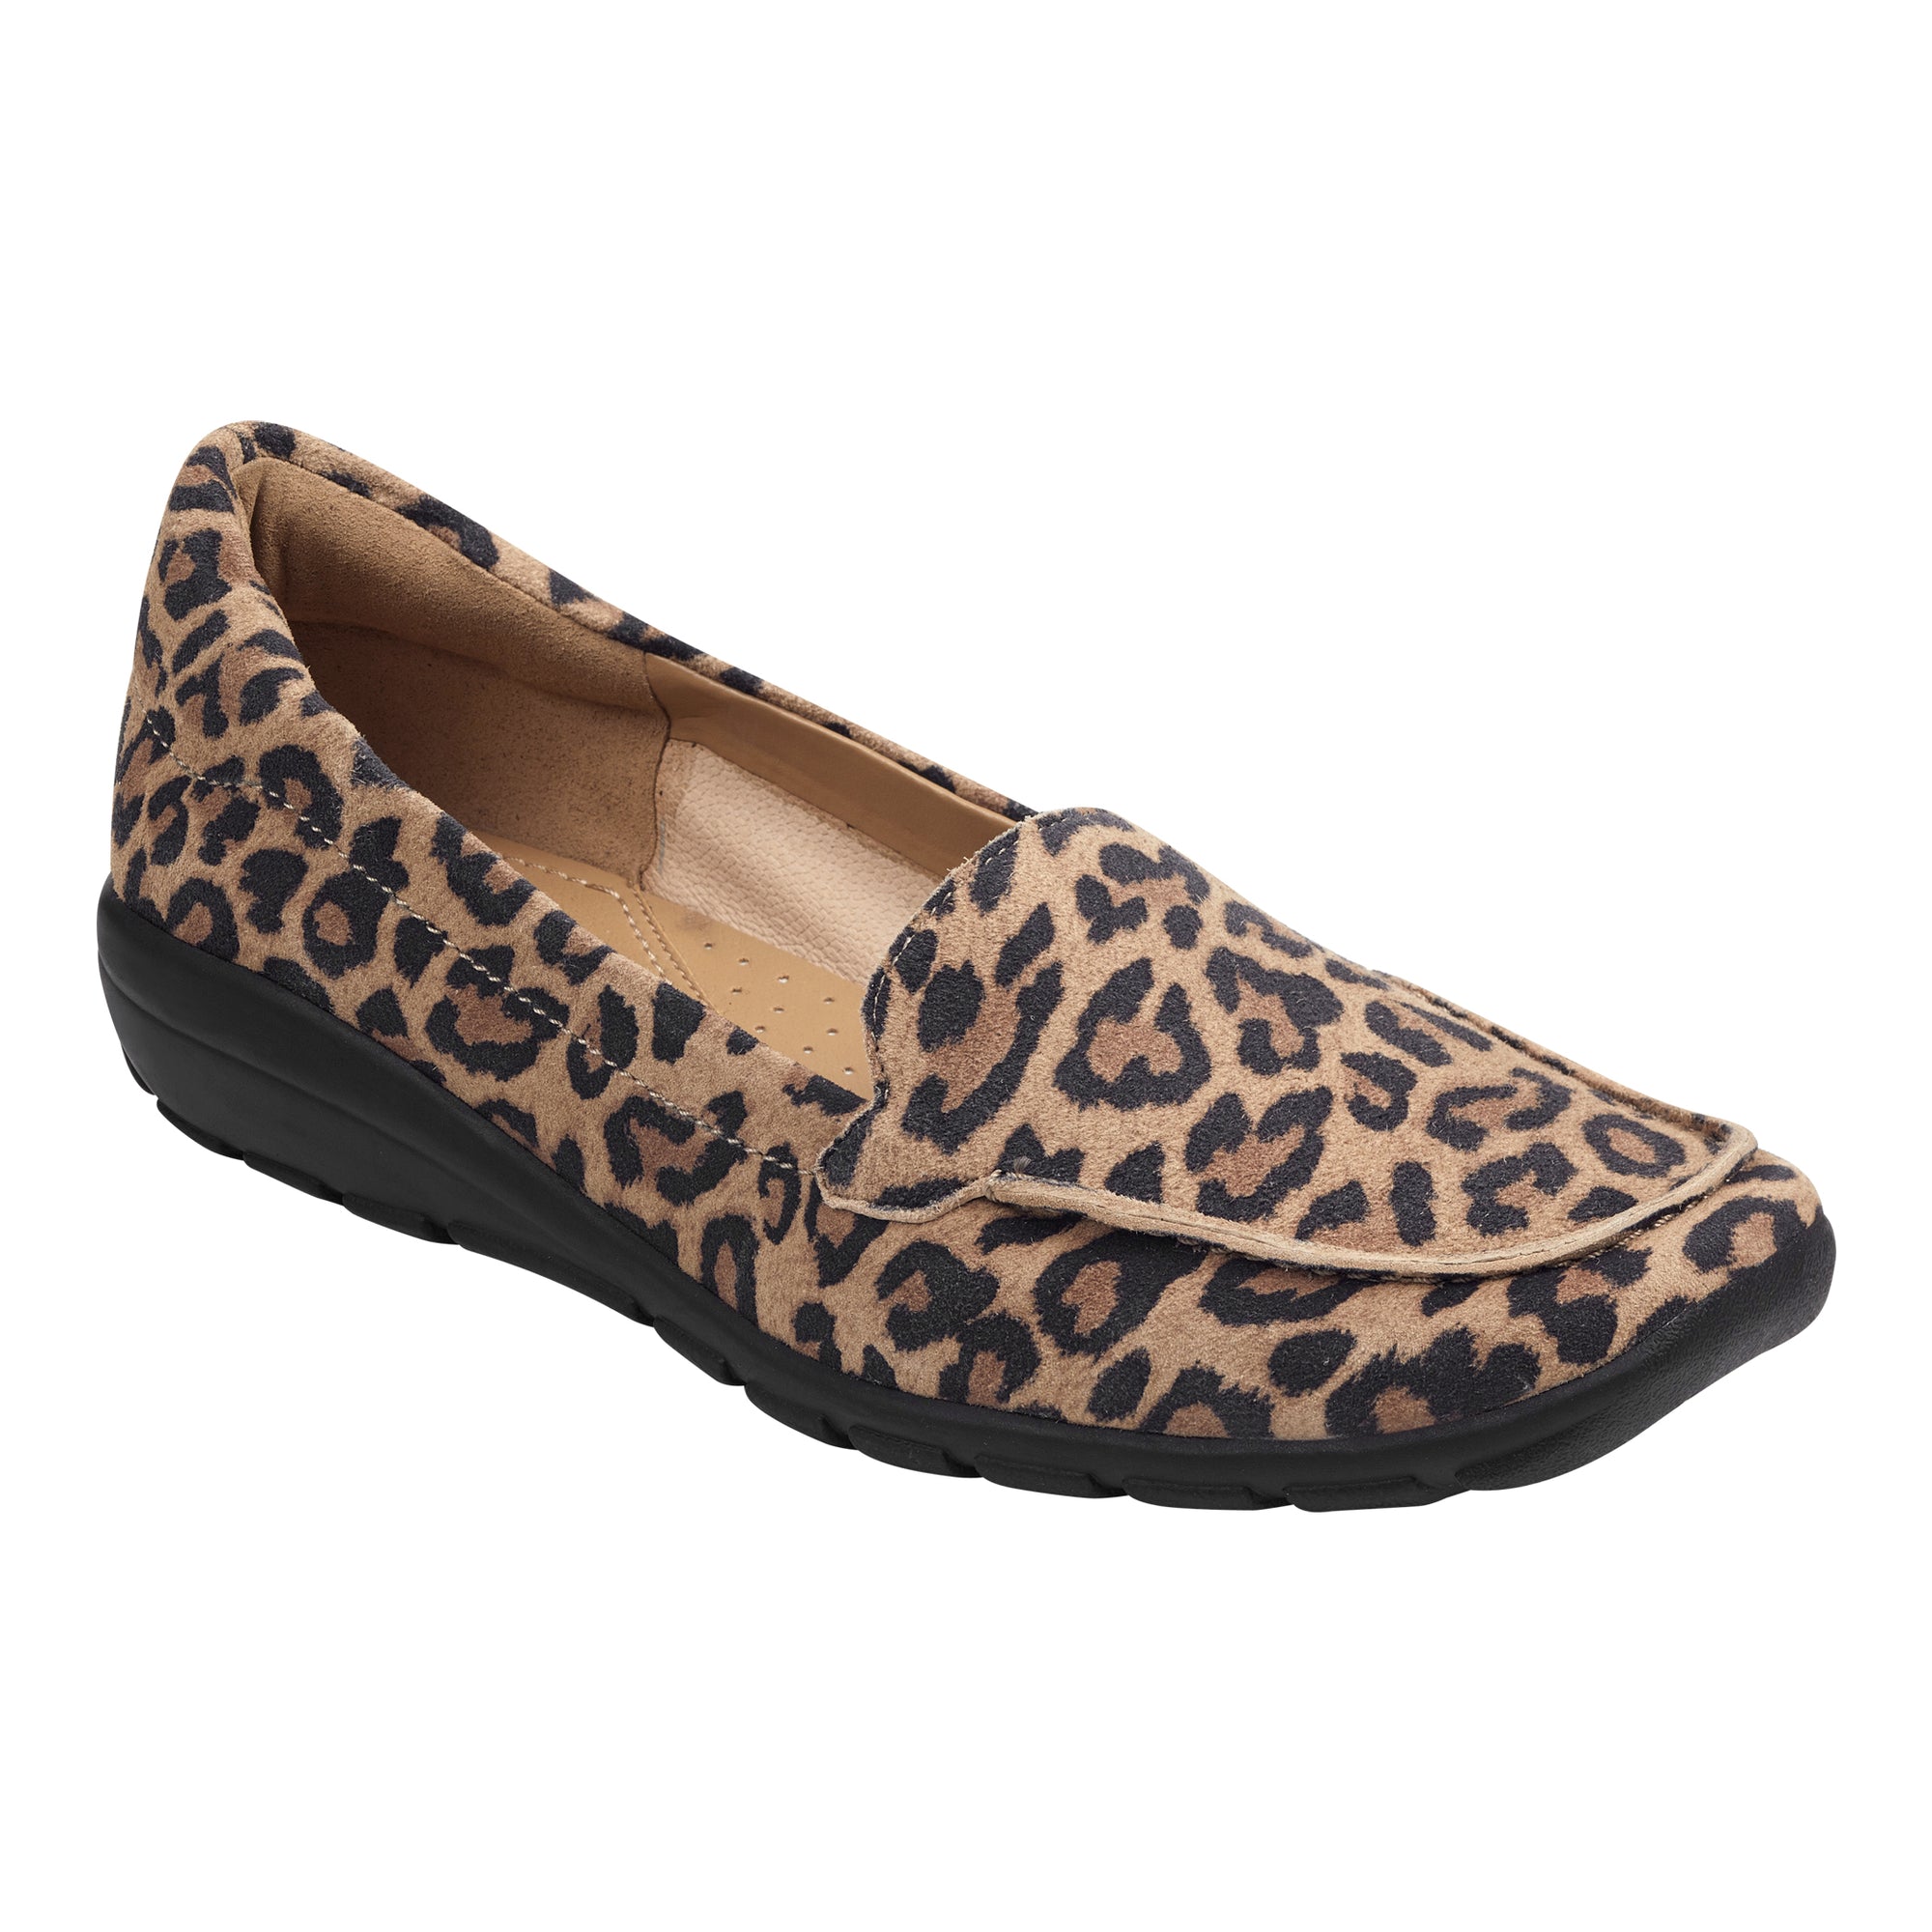 wide width leopard loafers